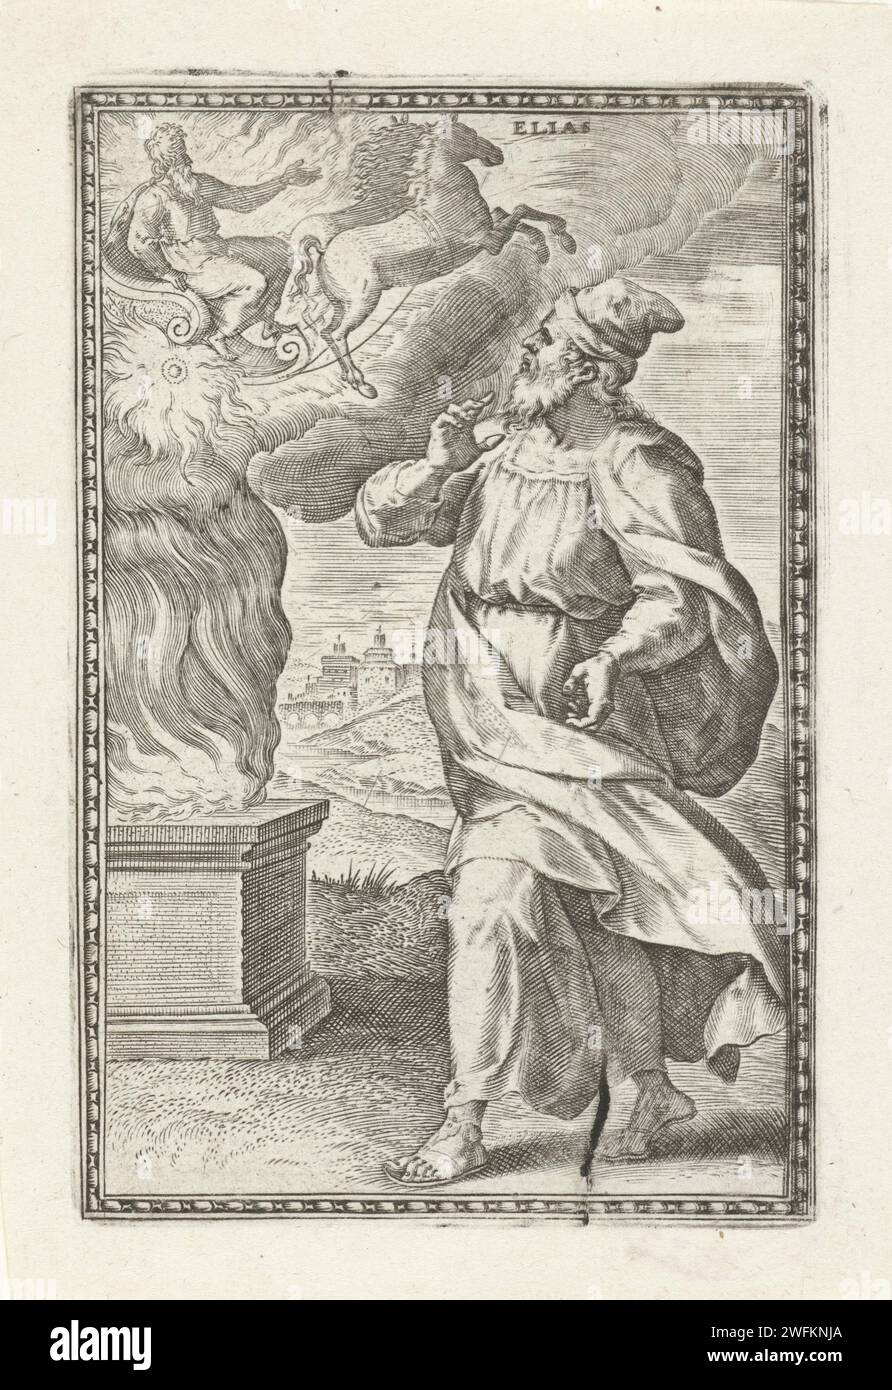 Prophète Elia, Johann Sadeler (I), d'après Chrispijn van den Broeck, 1575 imprimer le prophète Elia. Sur le deuxième plan, un bloc sacrificiel brûlant avec la vision de l'Ascension d'Elijah avec deux chevaux ardents. Vingt-cinq estampes d'une série de 39 parties avec le sujet des gens de l'ancien Testament. Anvers gravure sur papier de personnes masculines de l'ancien Testament (avec NOM) (pas dans le contexte biblique). Un char, des chevaux de feu et un tourbillon apparaissent et Élie est porté dans le ciel ; la cape d'Élie tombe (ou il la remet à Elisée) Banque D'Images